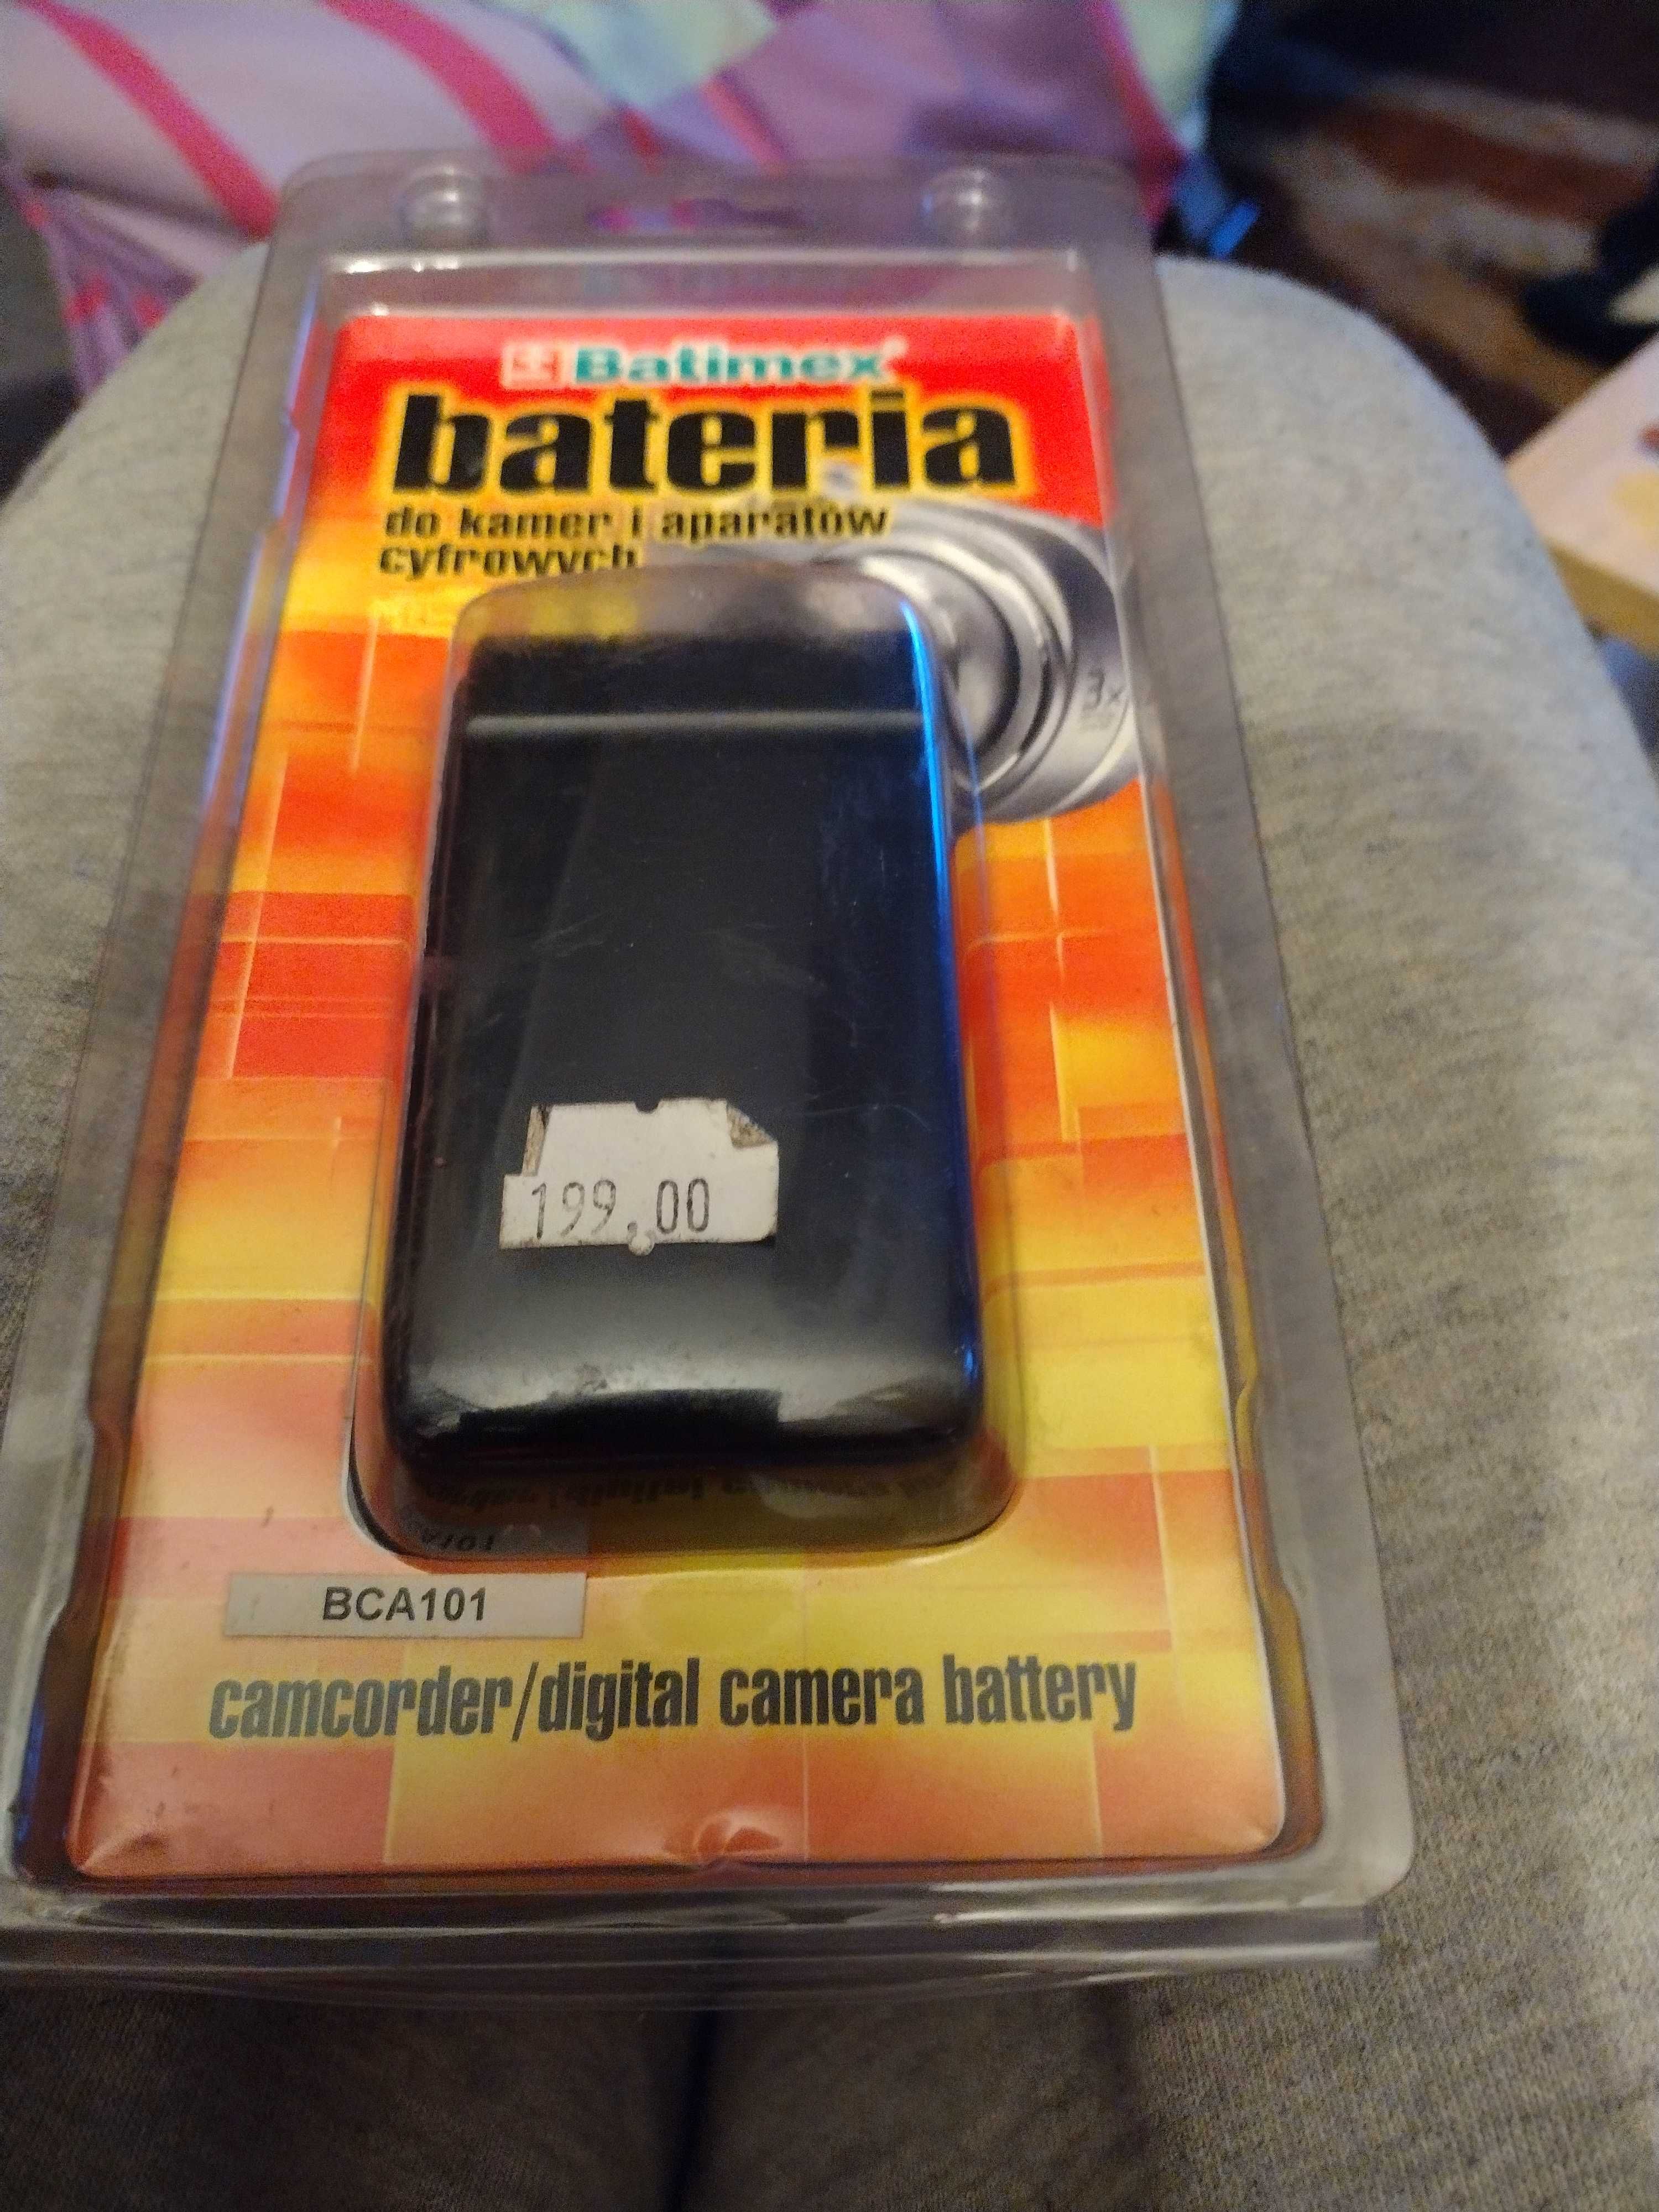 Nowa bateria do kamer i aparatów cyfrowych Batimex BCA 101